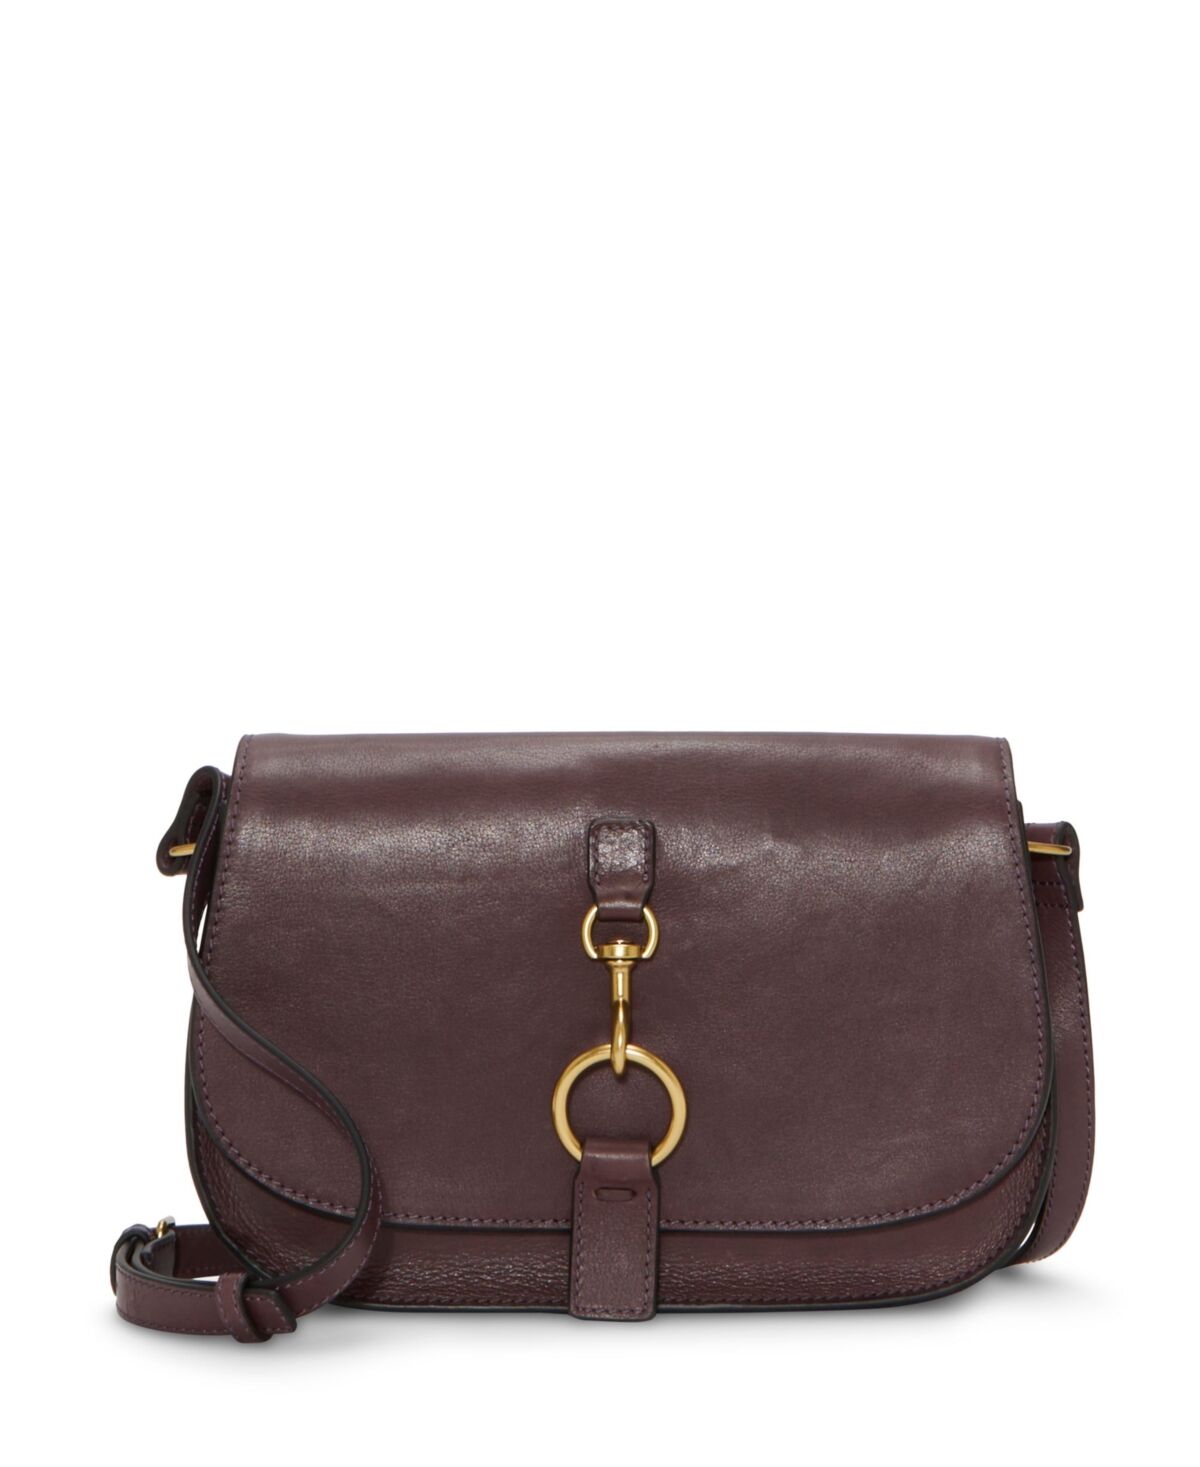 Lucky Brand Women's Kate Leather Crossbody Handbag - Blackberry